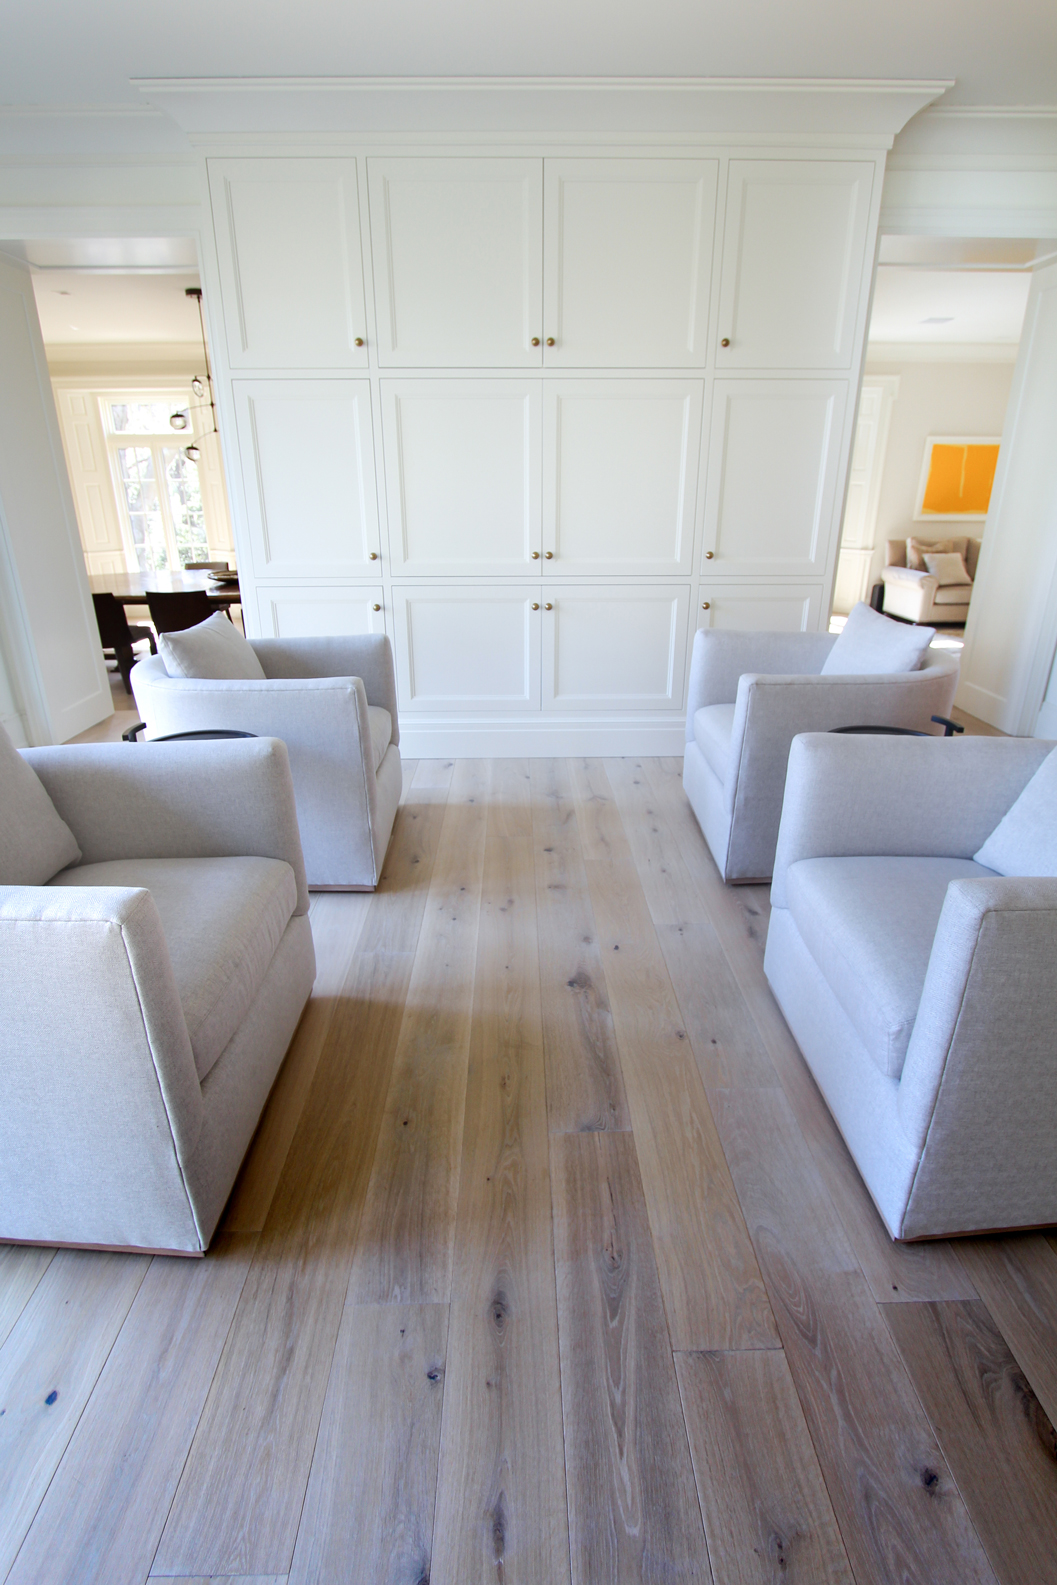 Main Line Residence featuring BASTILLE European White Oak Flooring